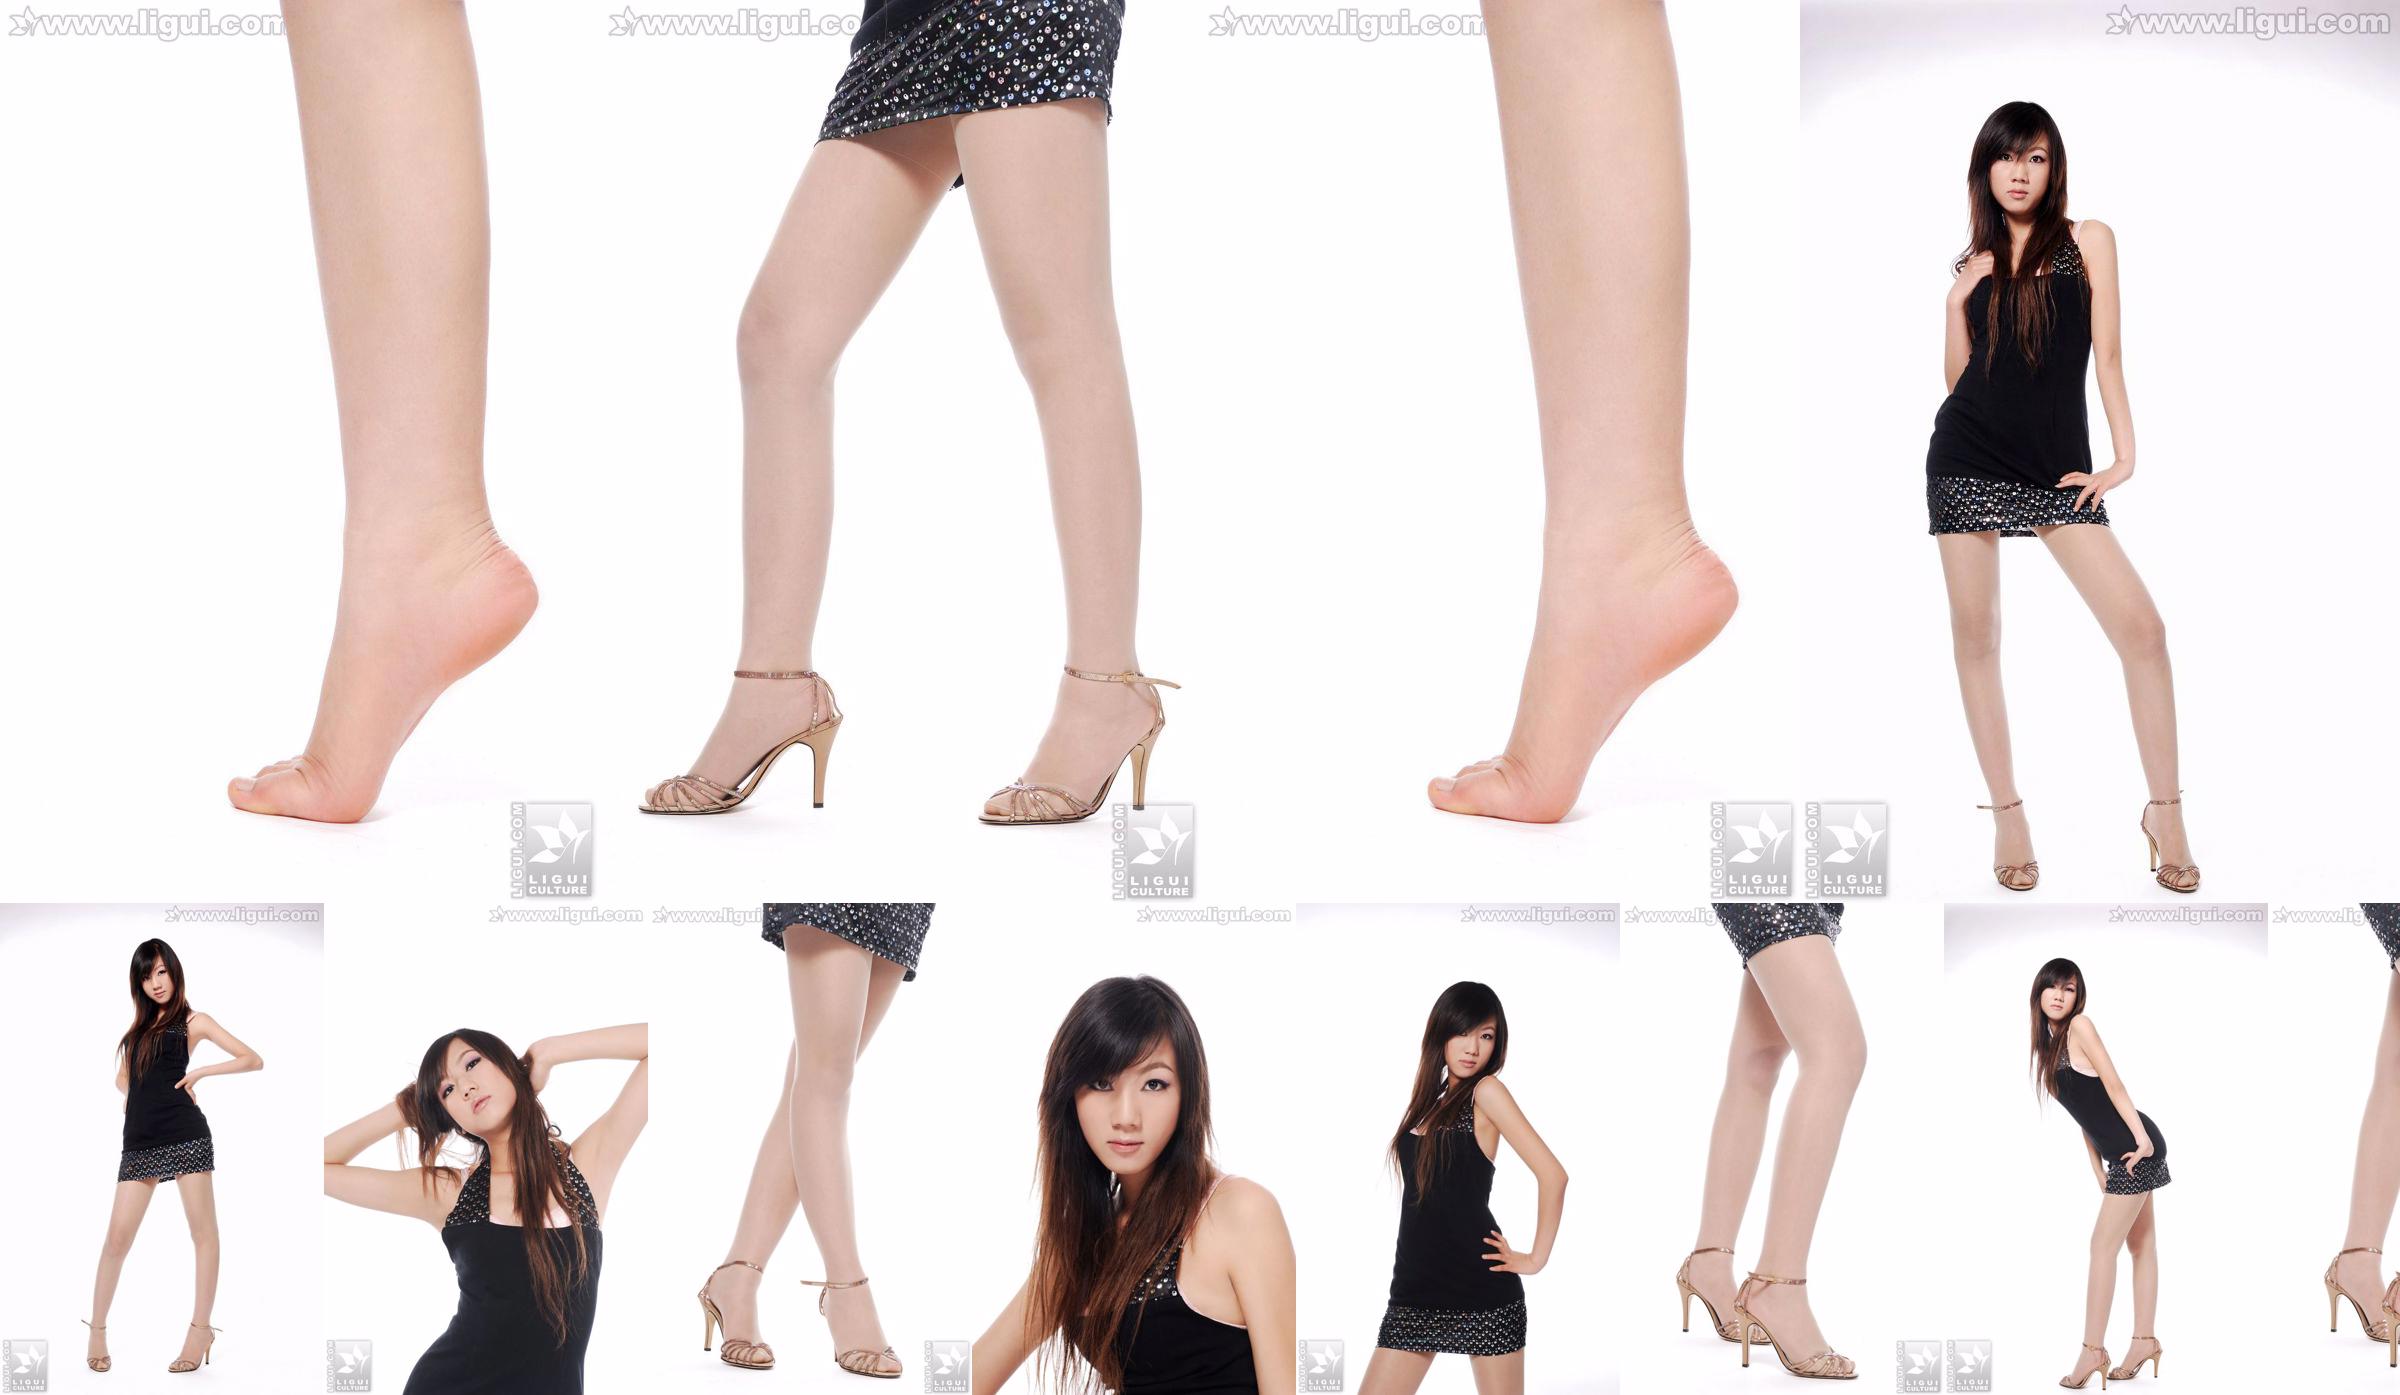 นางแบบ Sheng Chao "ส้นสูงหยกเท้าสวยโชว์ใหม่" [Sheng LiGui] ภาพถ่ายขาสวยและเท้าหยก No.474ab1 หน้า 6